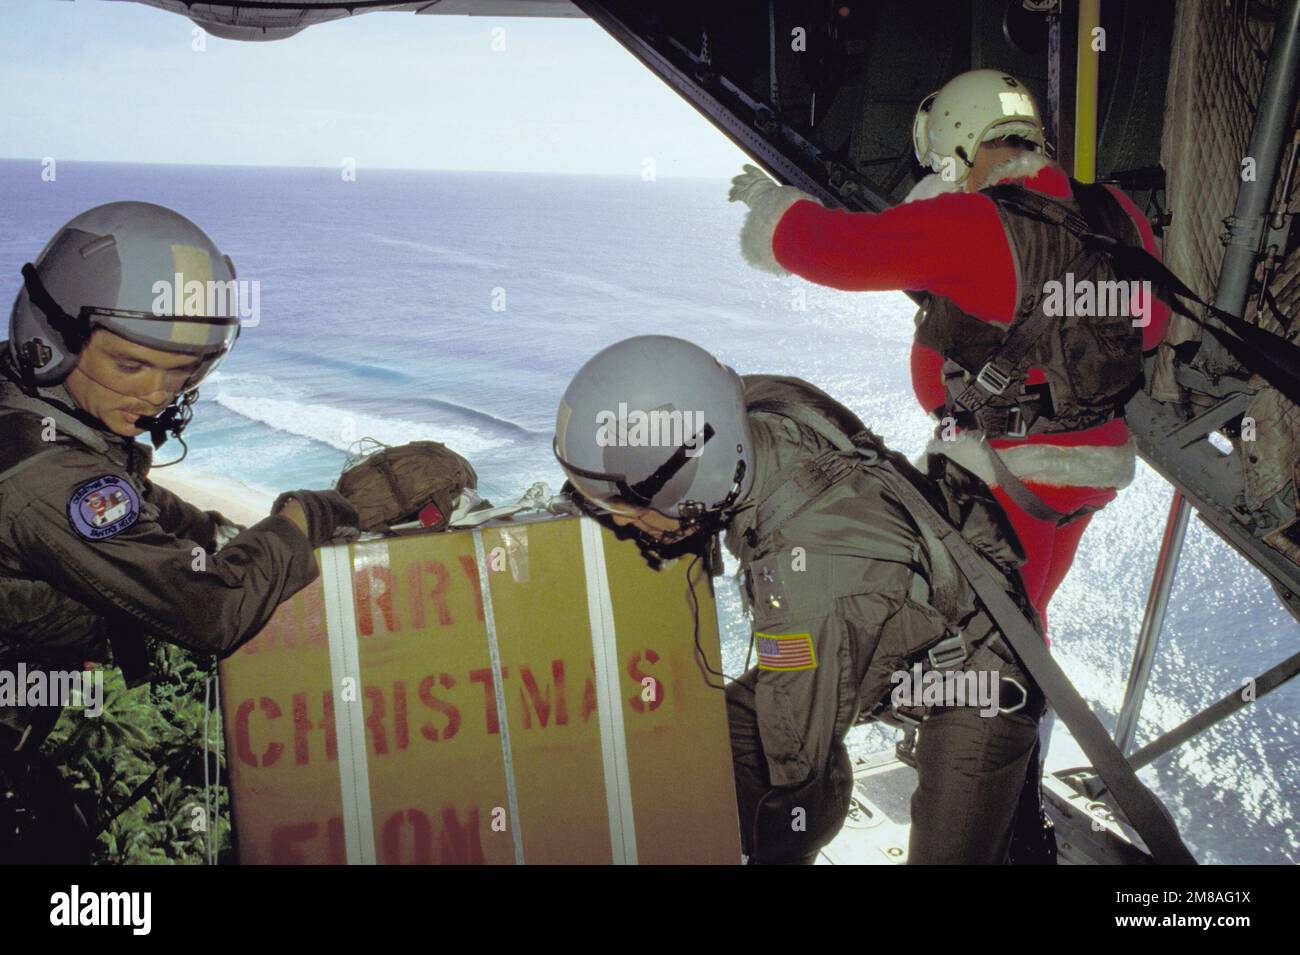 Das Personal der taktischen Lufttransport-Geschwader 345. und 21. bereitet sich darauf vor, ein Paket aus dem Frachtraum ihres C-130-Flugzeugs Hercules zu entladen, während der Weihnachtsmann (MGEN Alexander K. Davidson, Commander, 22. Air Force) bereitsteht. Gespendete Weihnachtsgeschenke werden mit dem Fallschirm auf lokale Inseln abgesprungen. Staat: FS Micronesia (FM) Land: Vereinigte Staaten von Amerika (USA) Stockfoto